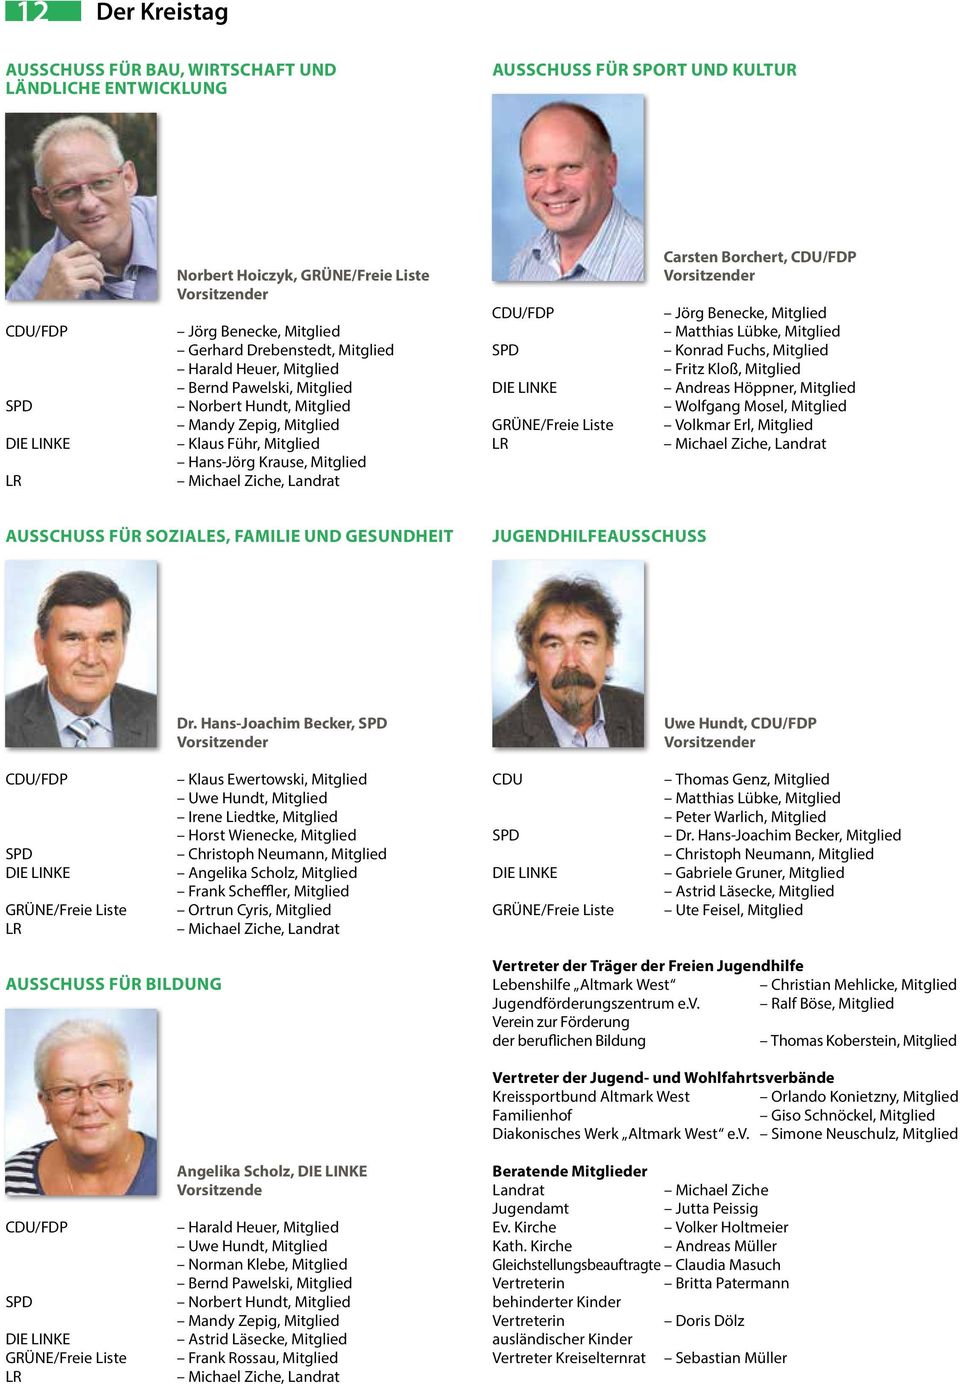 CDU/FDP SPD DIE LINKE GRÜNE/Freie Liste LR Carsten Borchert, CDU/FDP Vorsitzender Jörg Benecke, Mitglied Matthias Lübke, Mitglied Konrad Fuchs, Mitglied Fritz Kloß, Mitglied Andreas Höppner, Mitglied